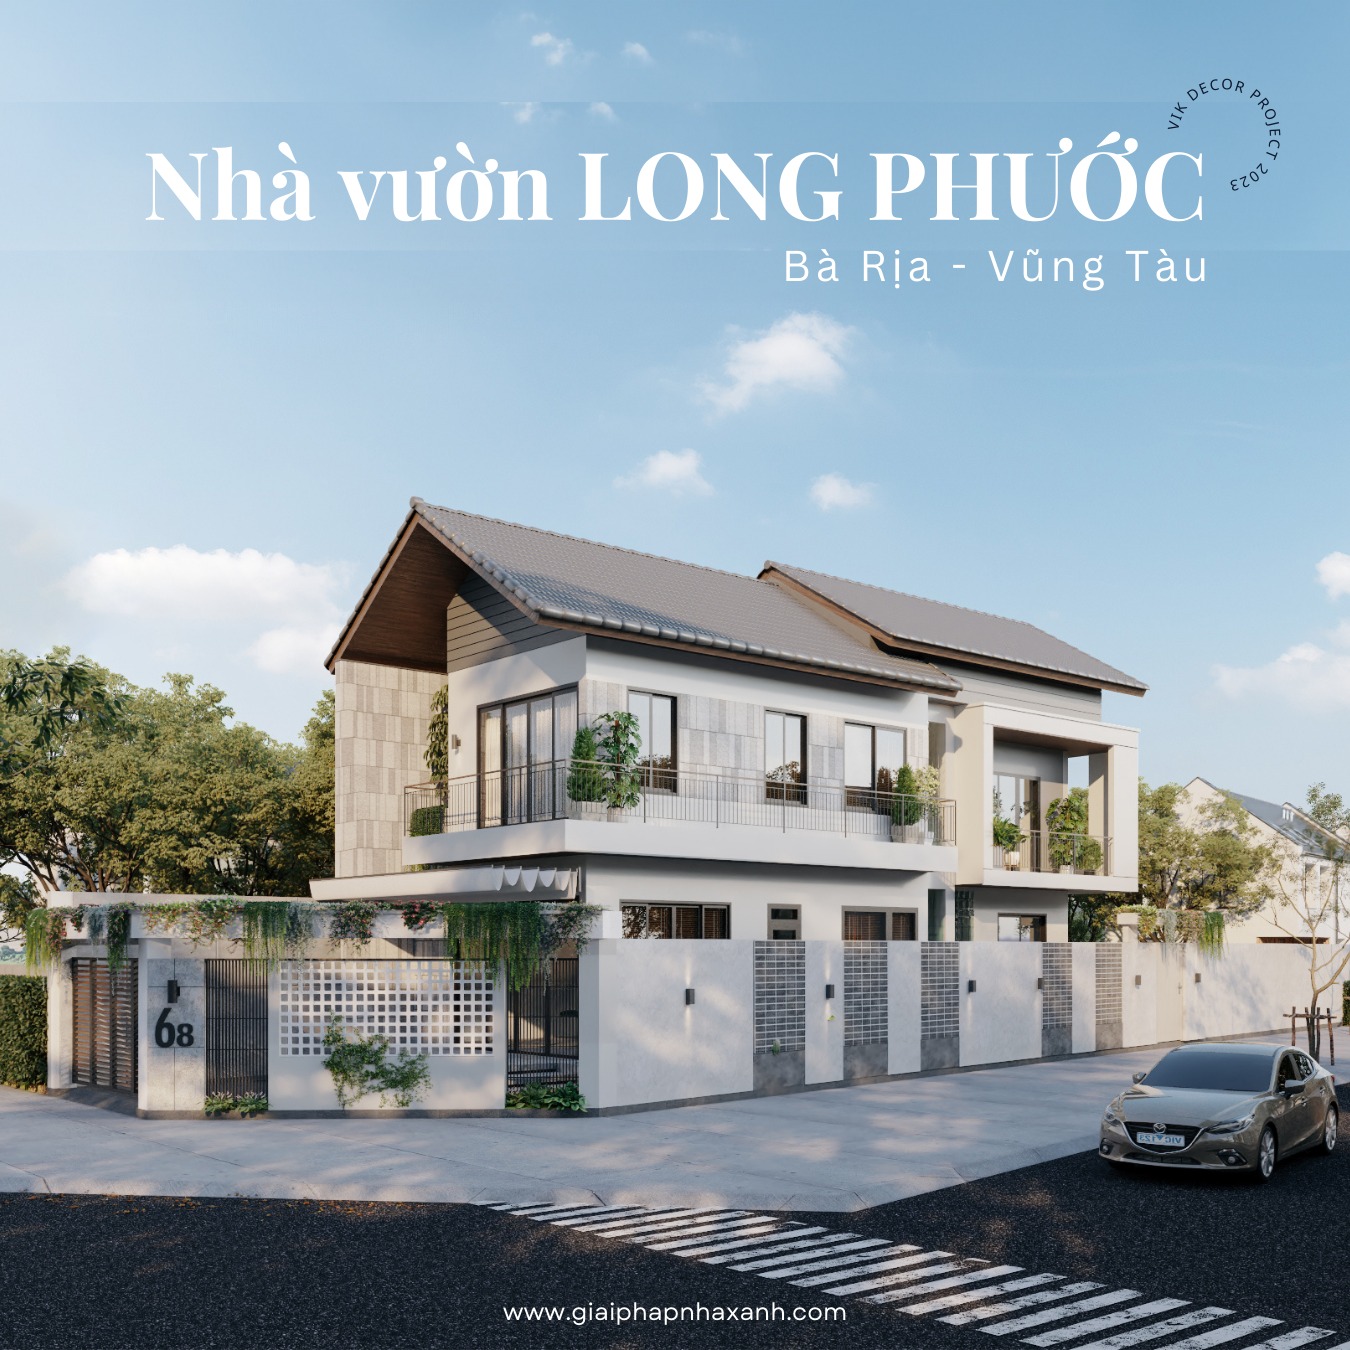 Nhà vườn chị Linh - Long Phước - Bà Rịa Vũng Tàu